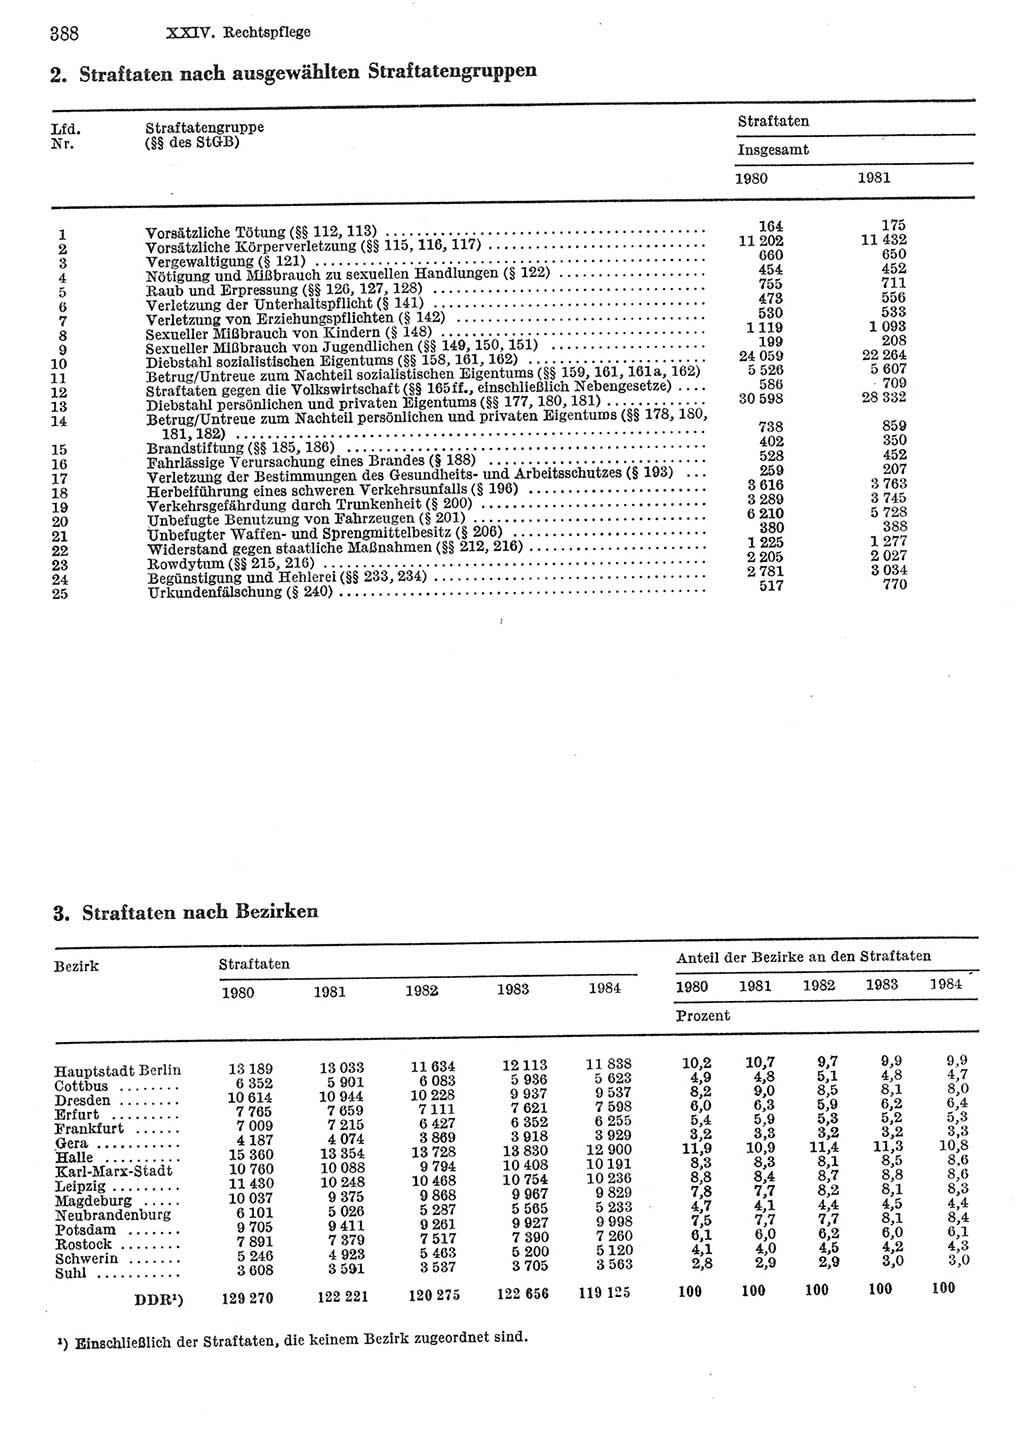 Statistisches Jahrbuch der Deutschen Demokratischen Republik (DDR) 1985, Seite 388 (Stat. Jb. DDR 1985, S. 388)